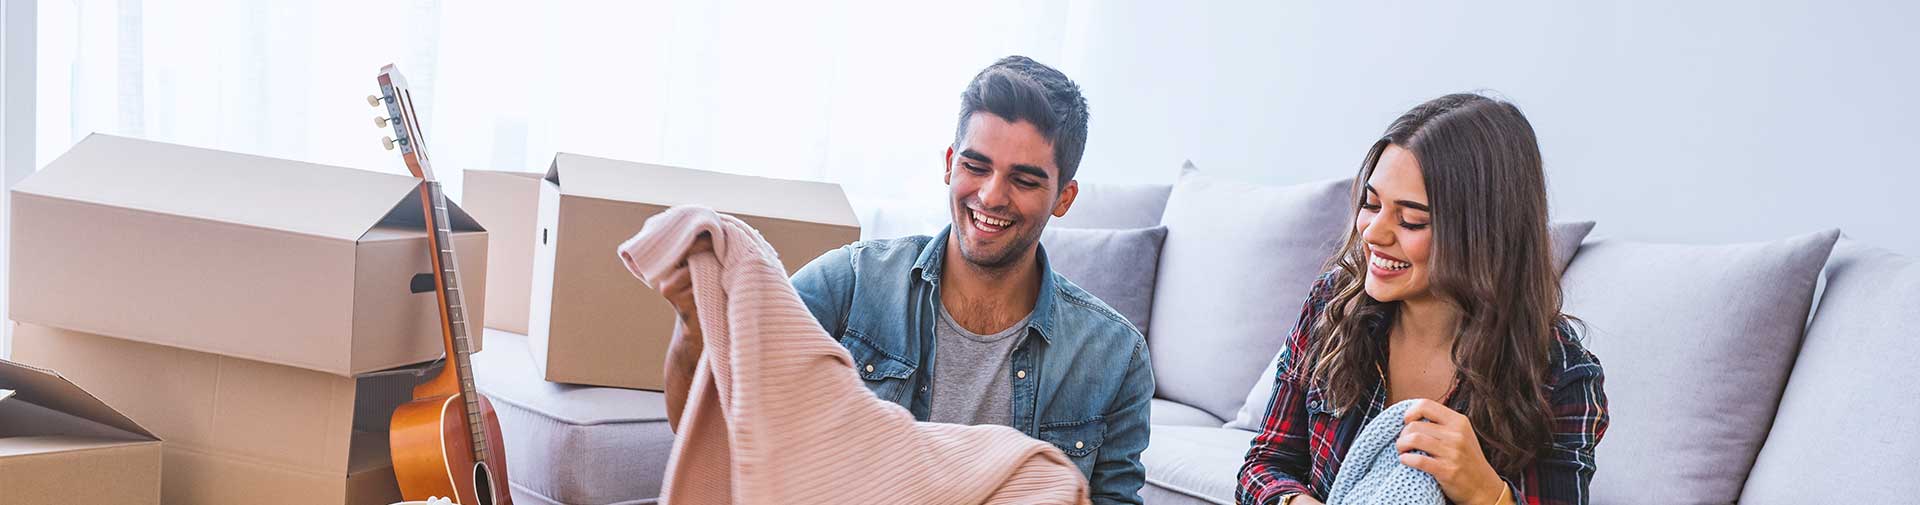 Ein Mann und eine Frau sitzen auf einem Sofa vor Umzugskartons und lachen.